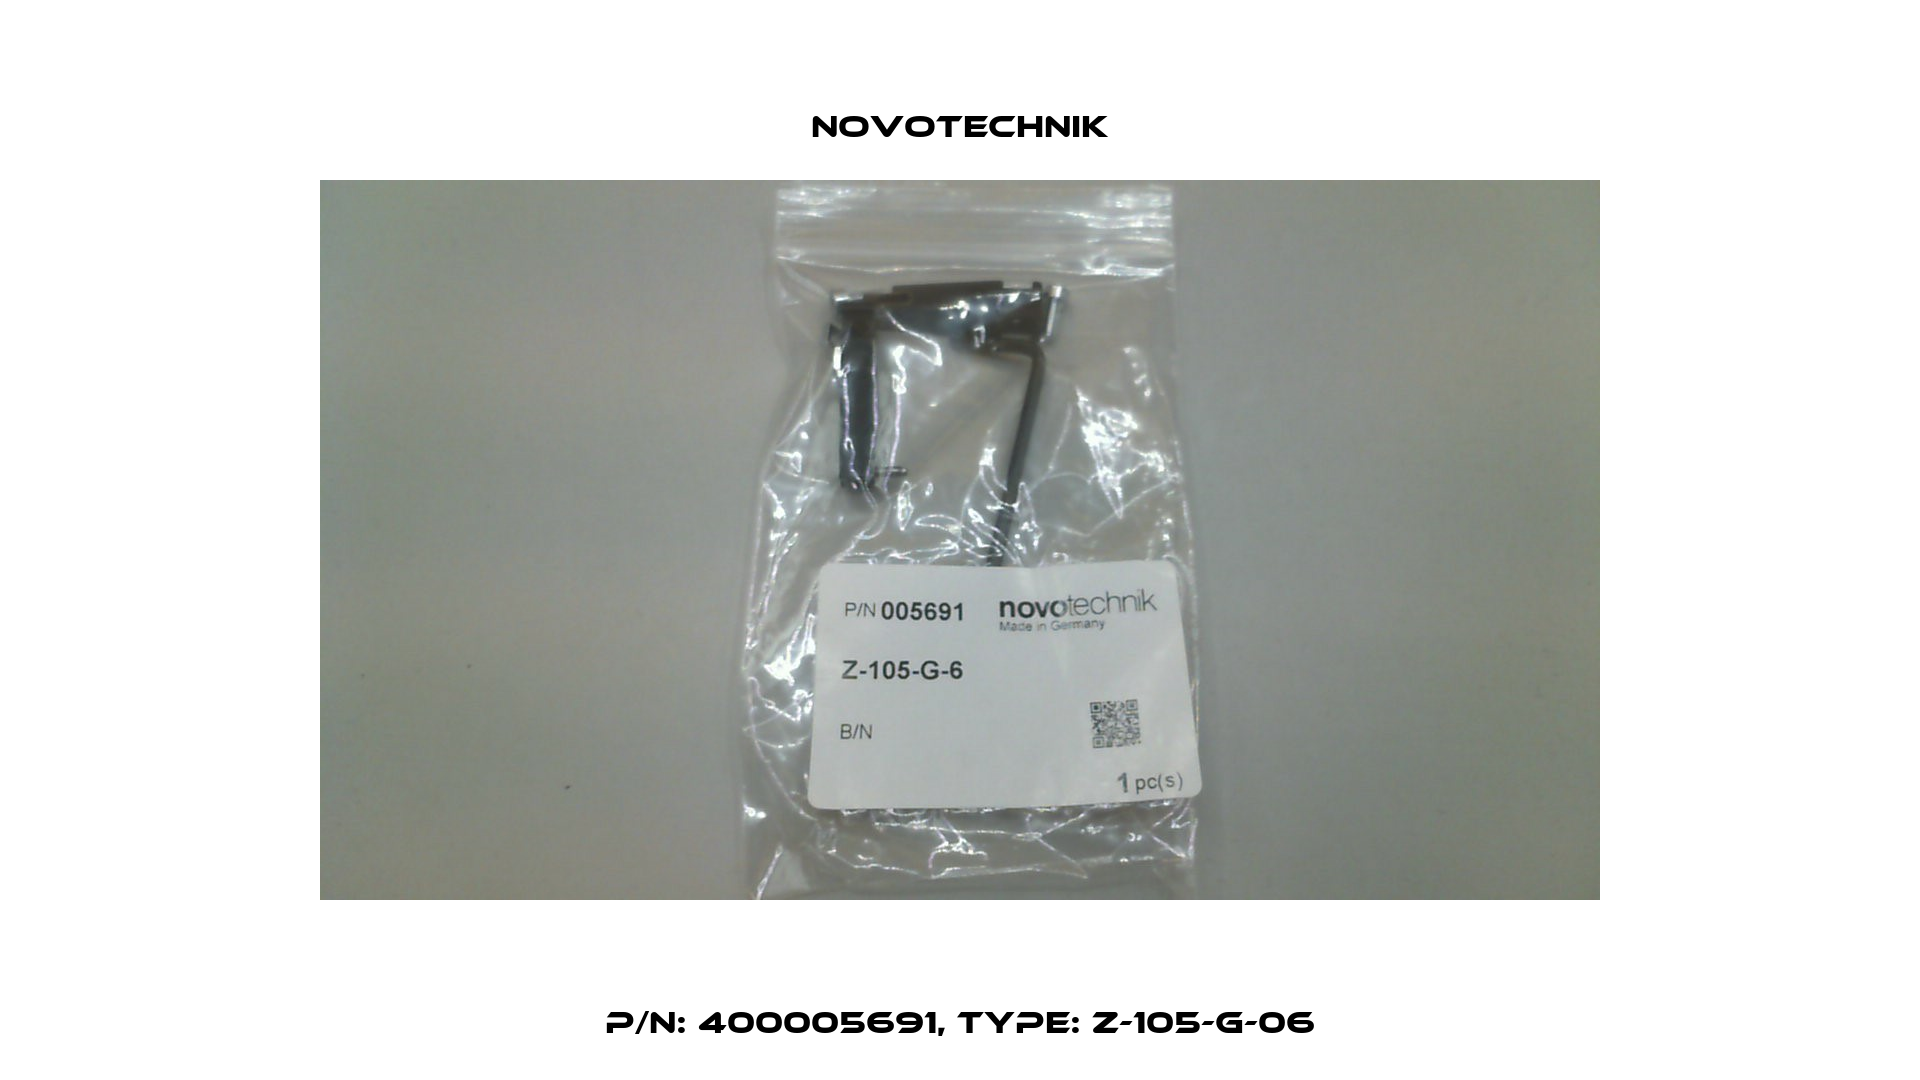 P/N: 400005691, Type: Z-105-G-06 Novotechnik